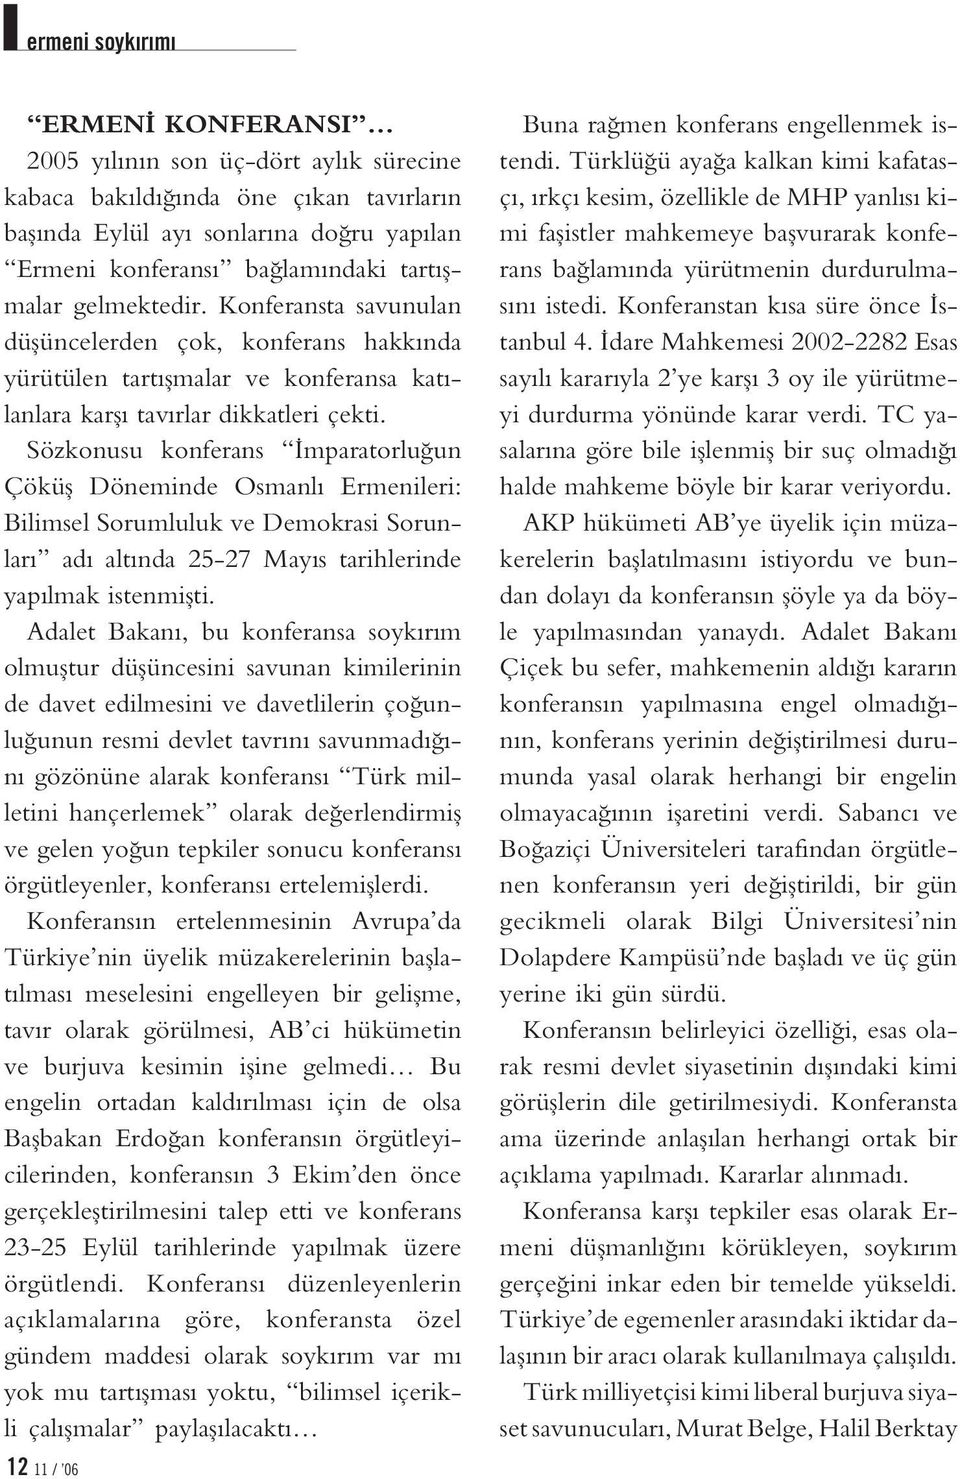 Sözkonusu konferans mparatorlu un Çöküfl Döneminde Osmanl Ermenileri: Bilimsel Sorumluluk ve Demokrasi Sorunlar ad alt nda 25-27 May s tarihlerinde yap lmak istenmiflti.